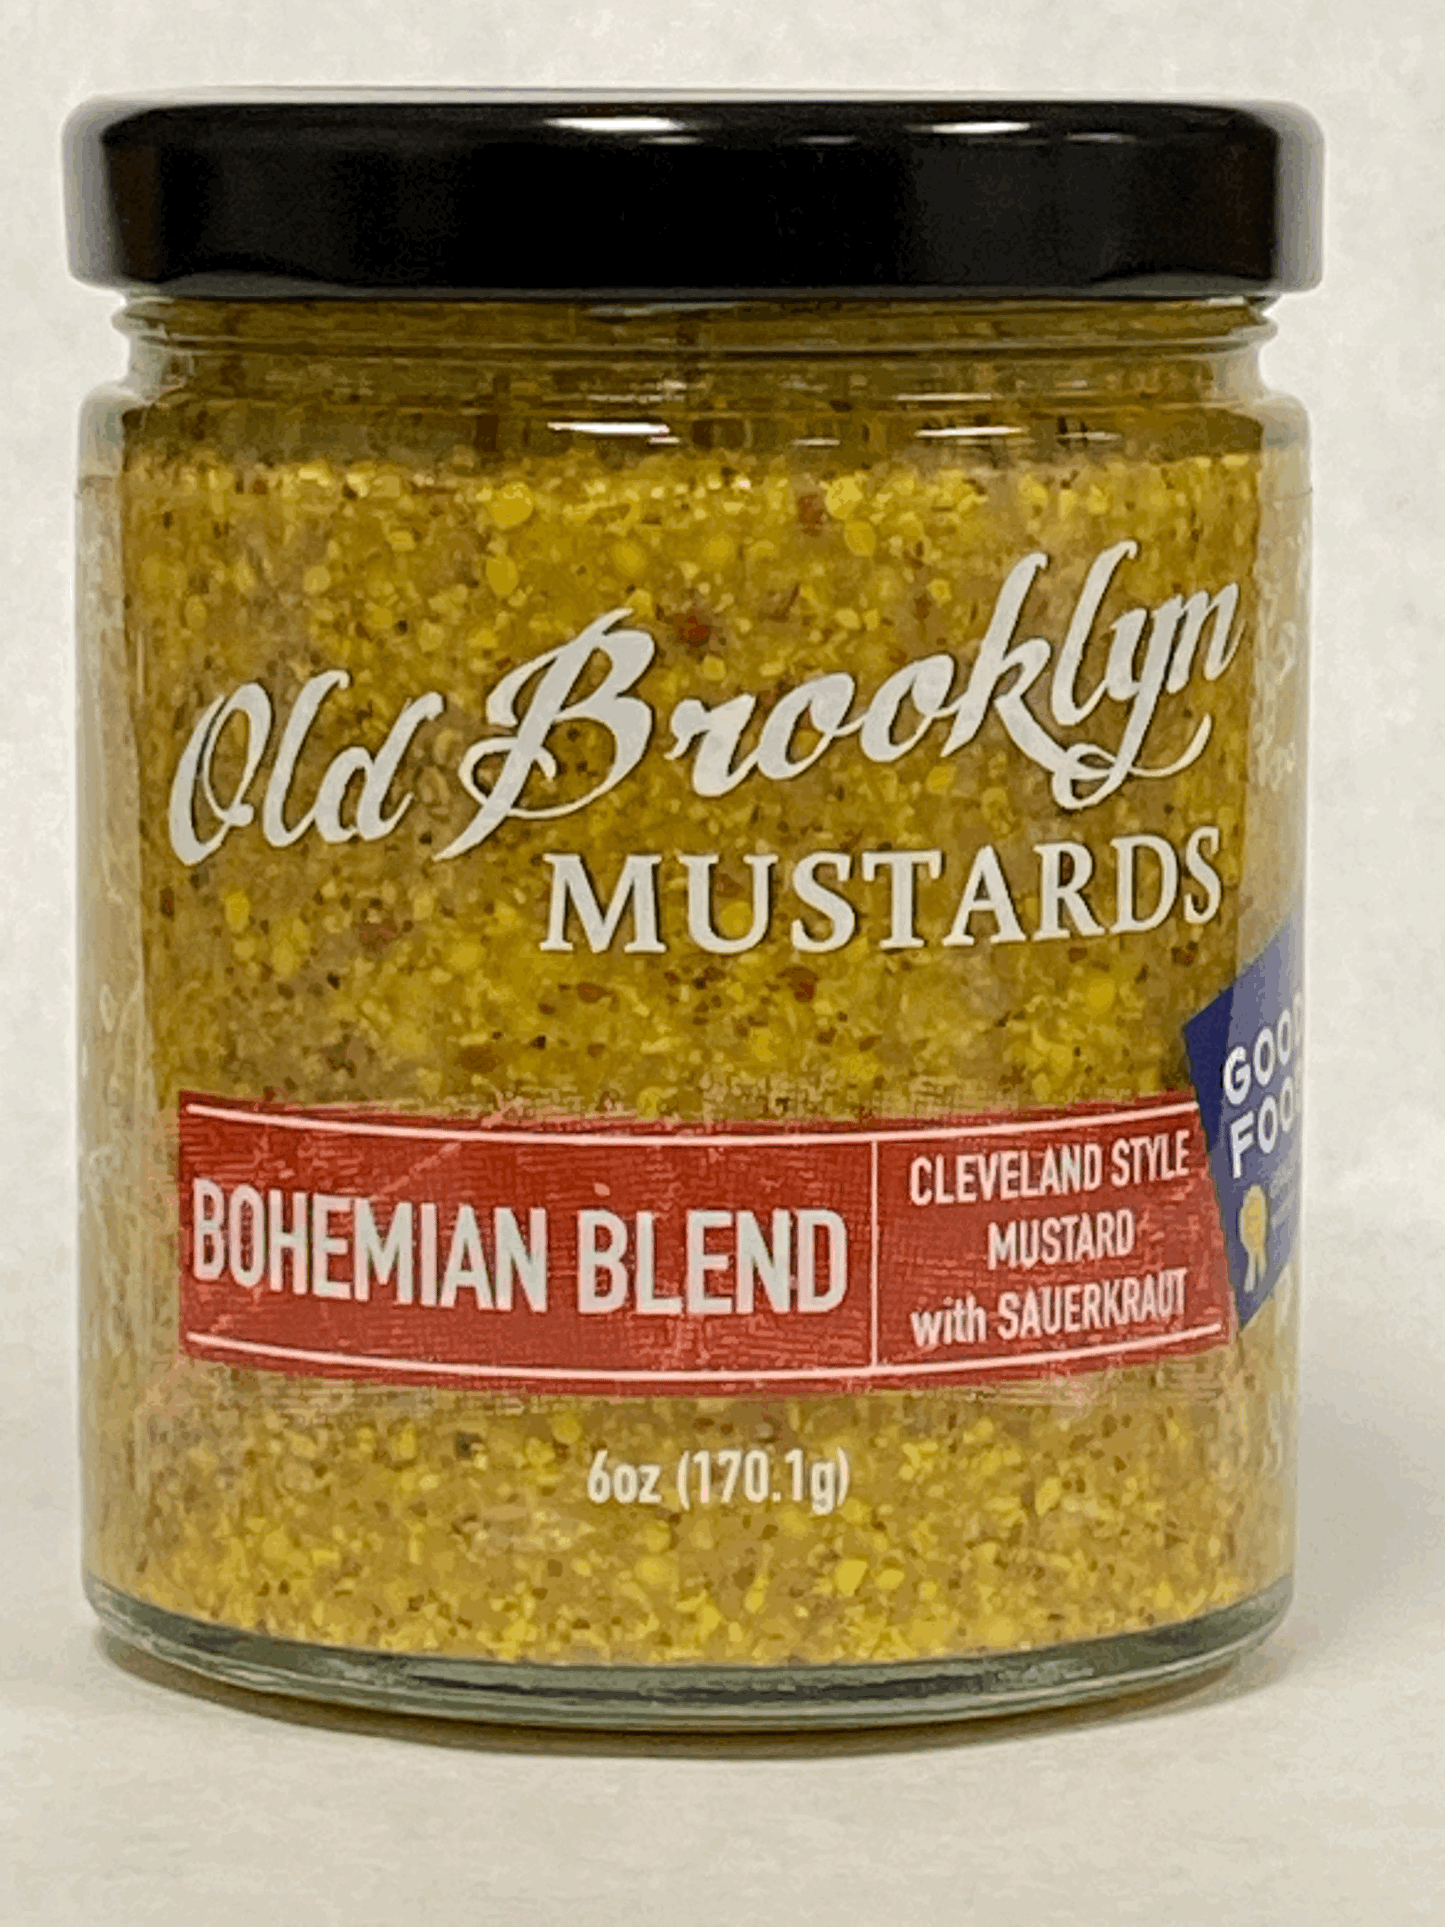 Bohemian Blend - Cleveland style mustard w/ sauerkraut